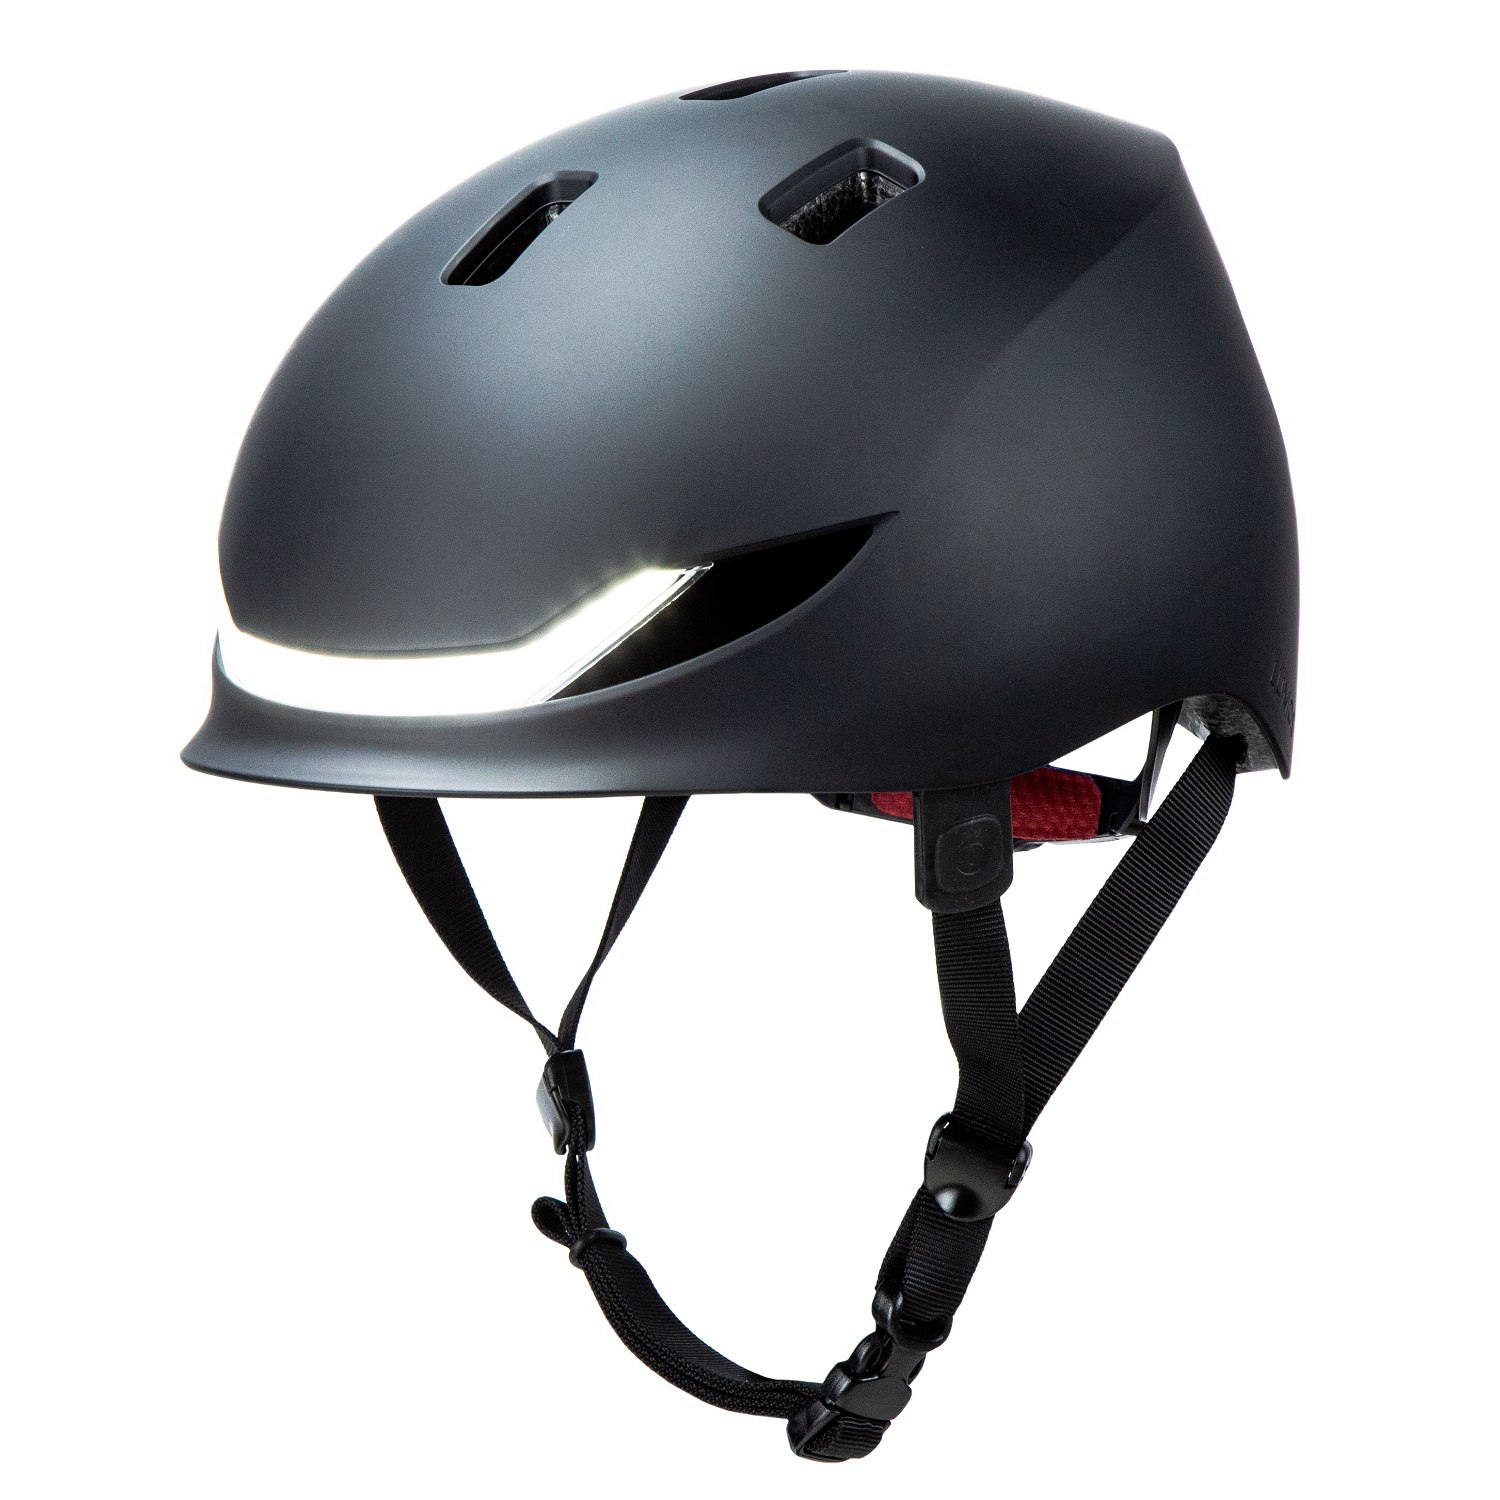 Productfoto van Lumos Street MIPS Helmet - Charcoal Black